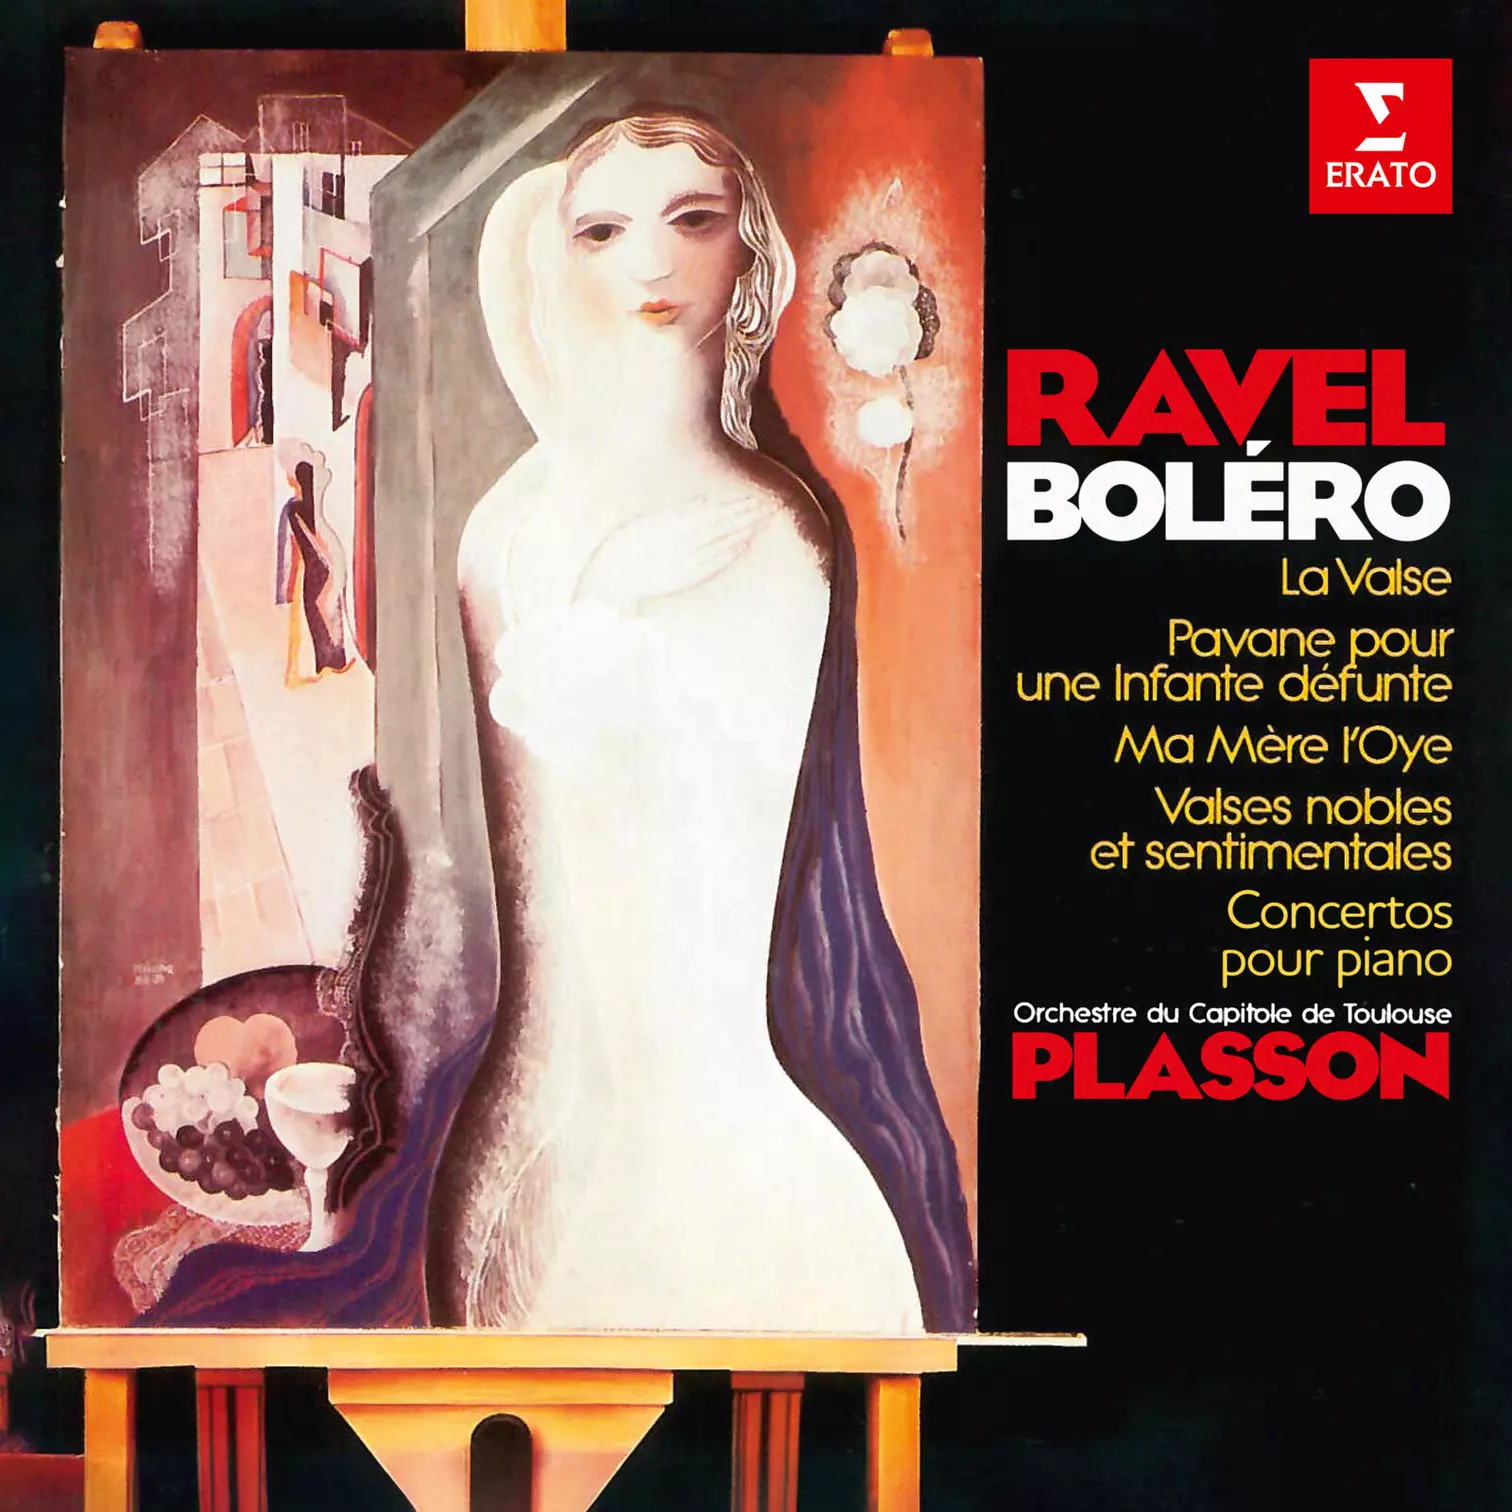 Ravel: Boléro, La valse, Ma mère l'Oye, Pavane pour une infante